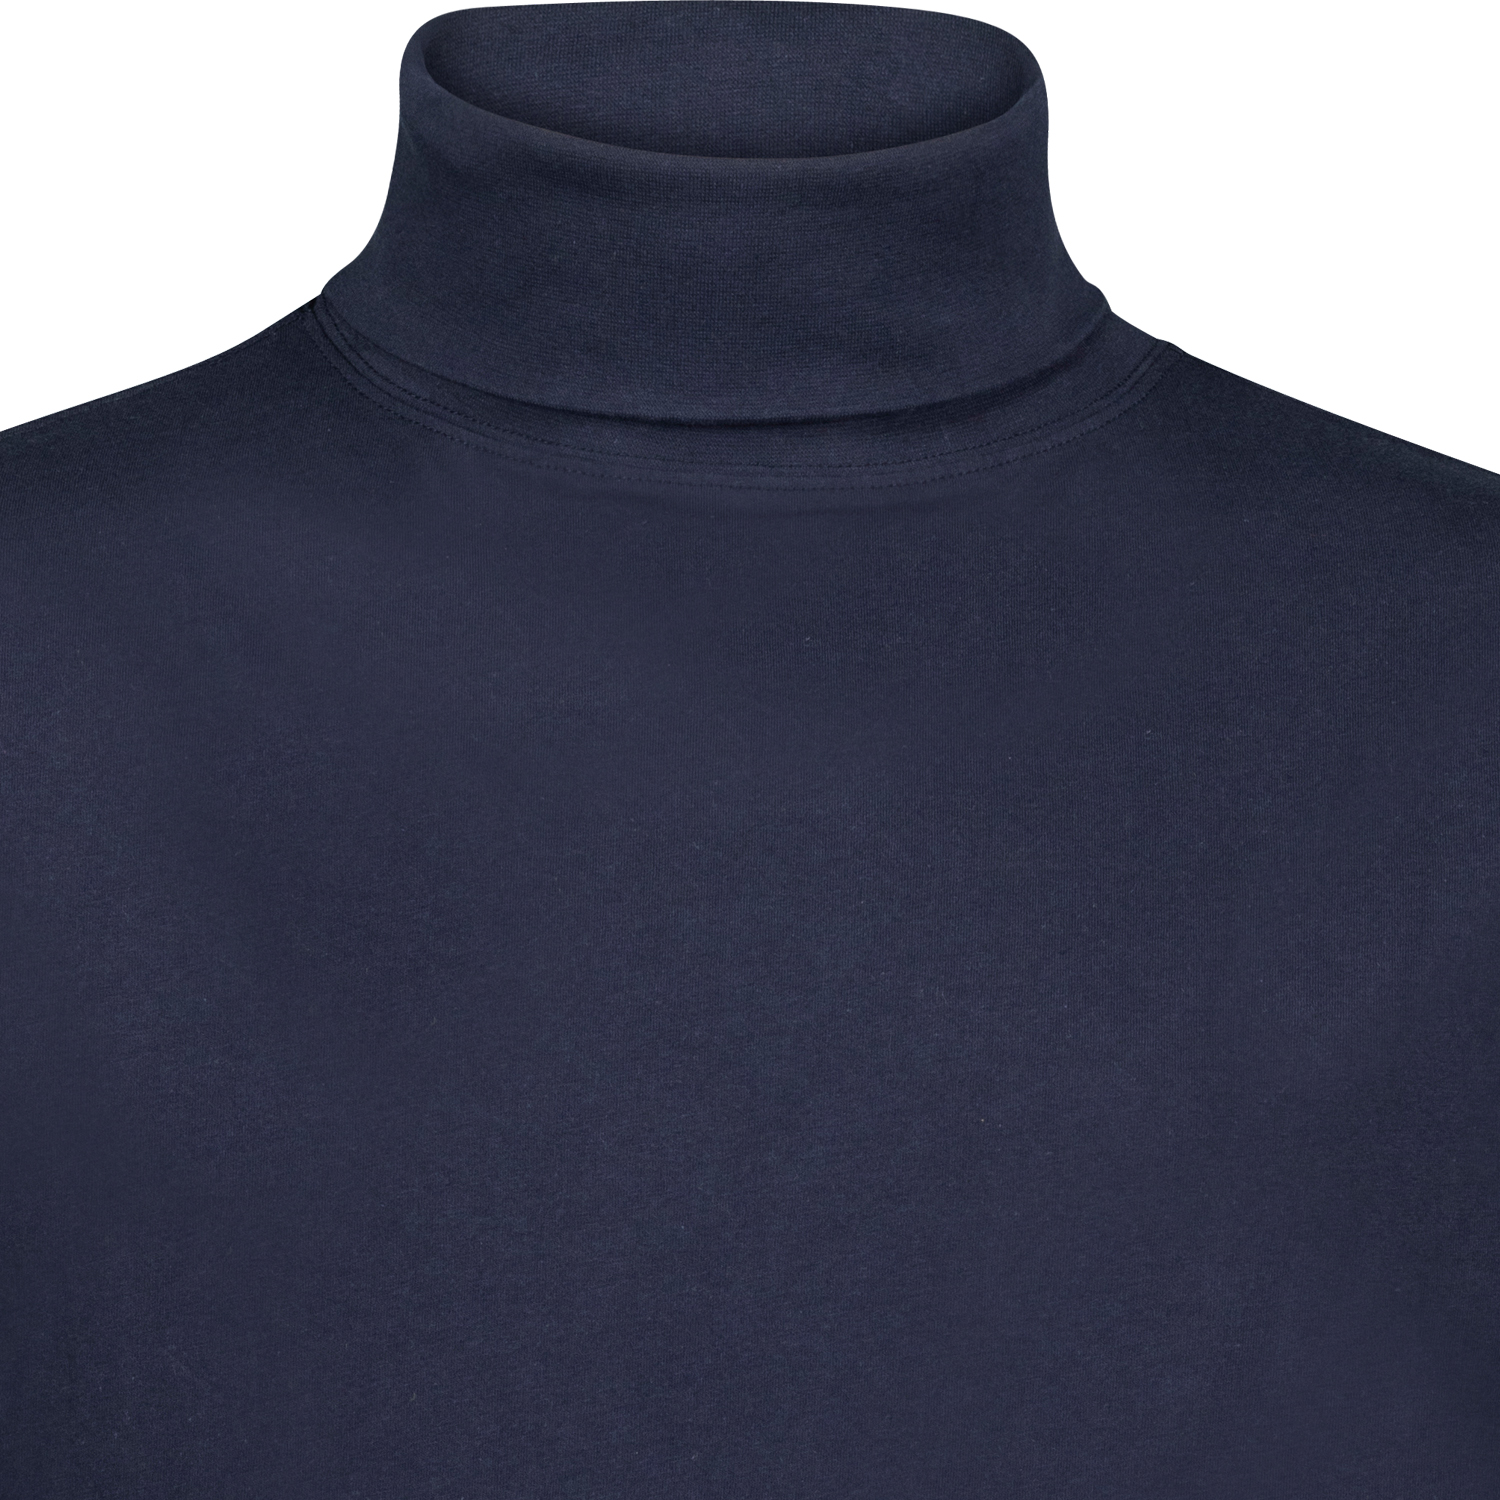 Rollkragen Shirt langarm COMFORT FIT für Herren von ADAMO in navy bis Übergrößen 12XL